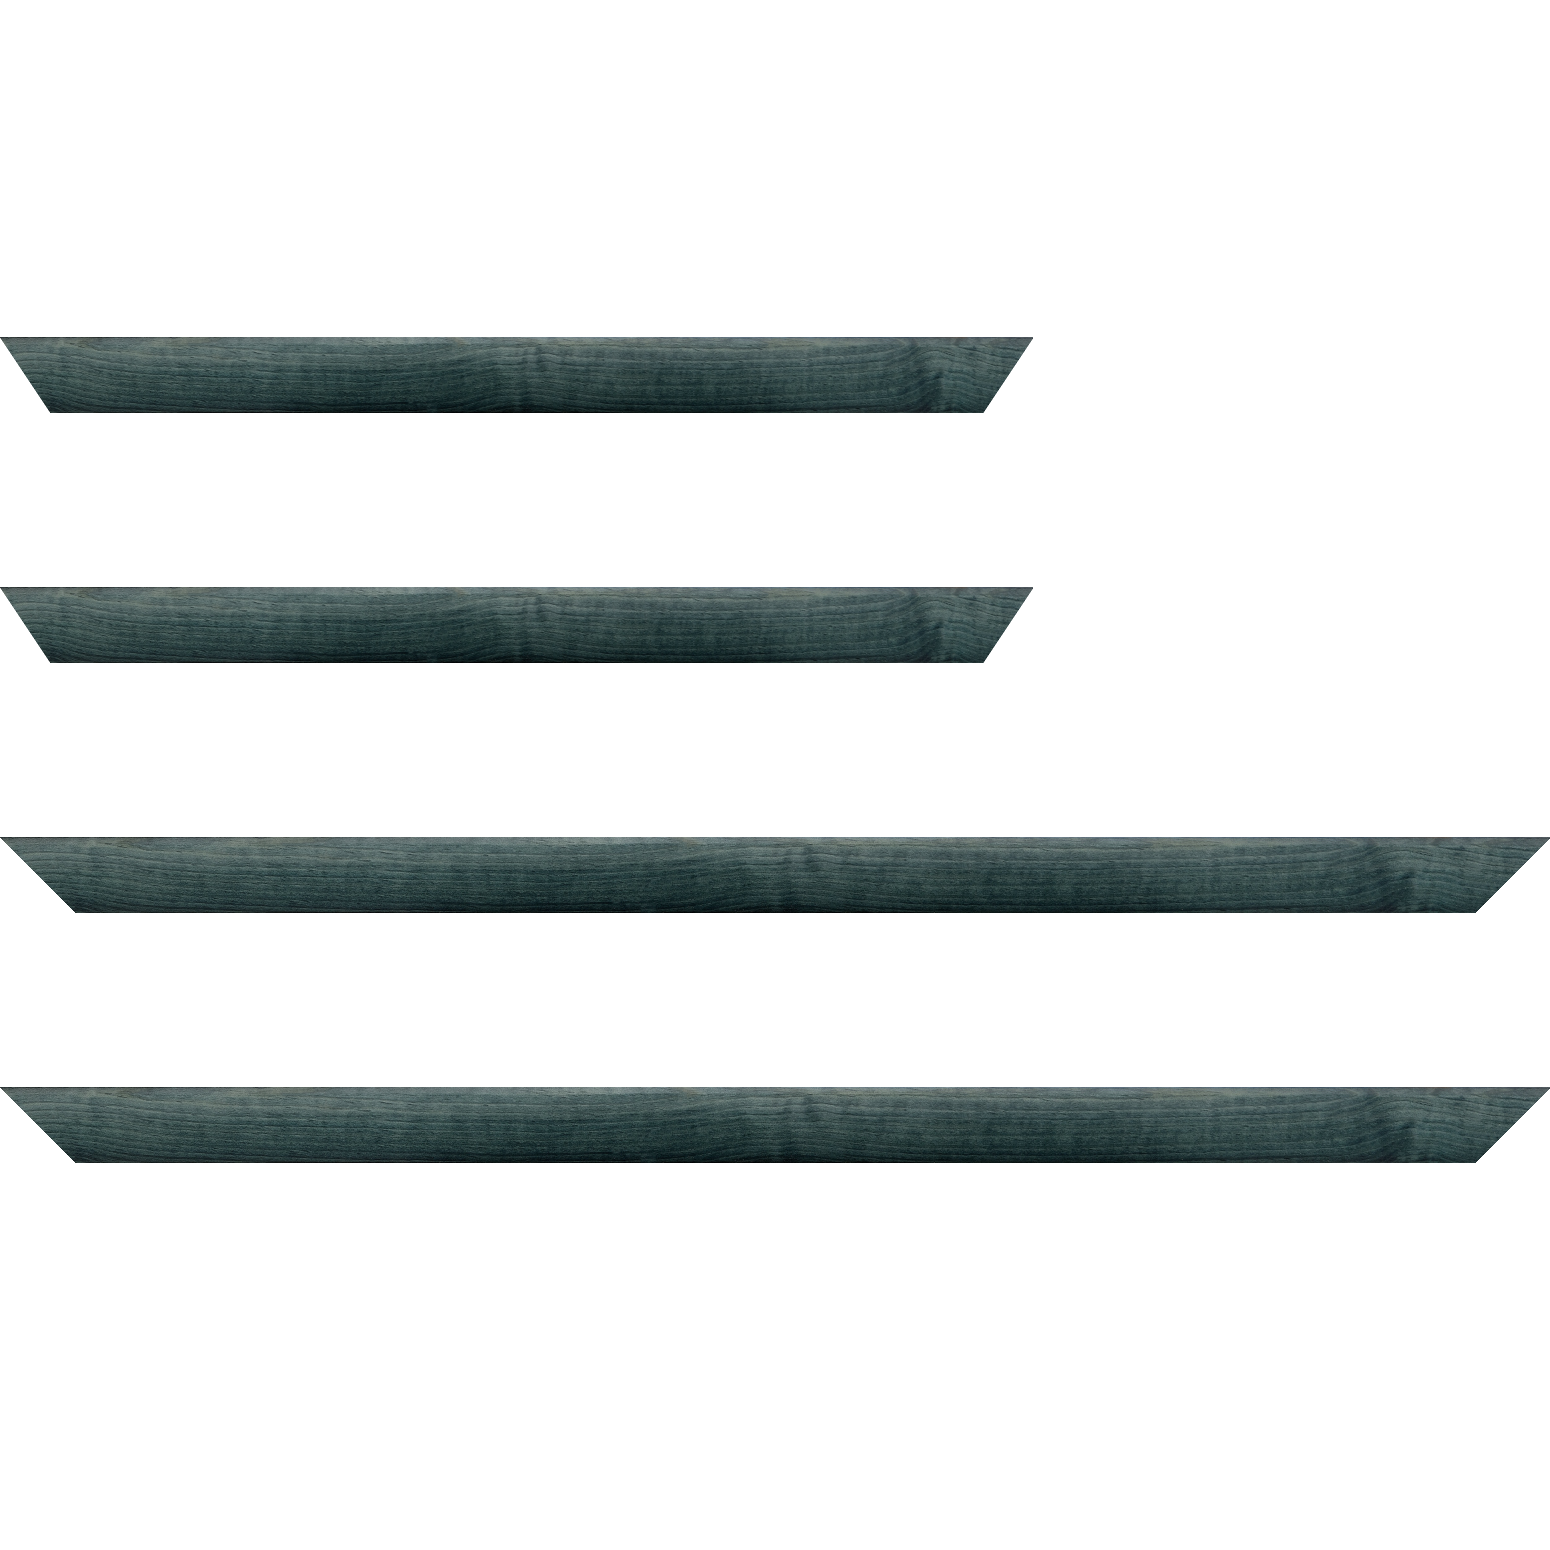 Baguette bois profil arrondi en pente plongeant largeur 2.4cm couleur bleu turquoise foncé finition vernis brillant,veine du bois  apparent (pin) , - 40x60